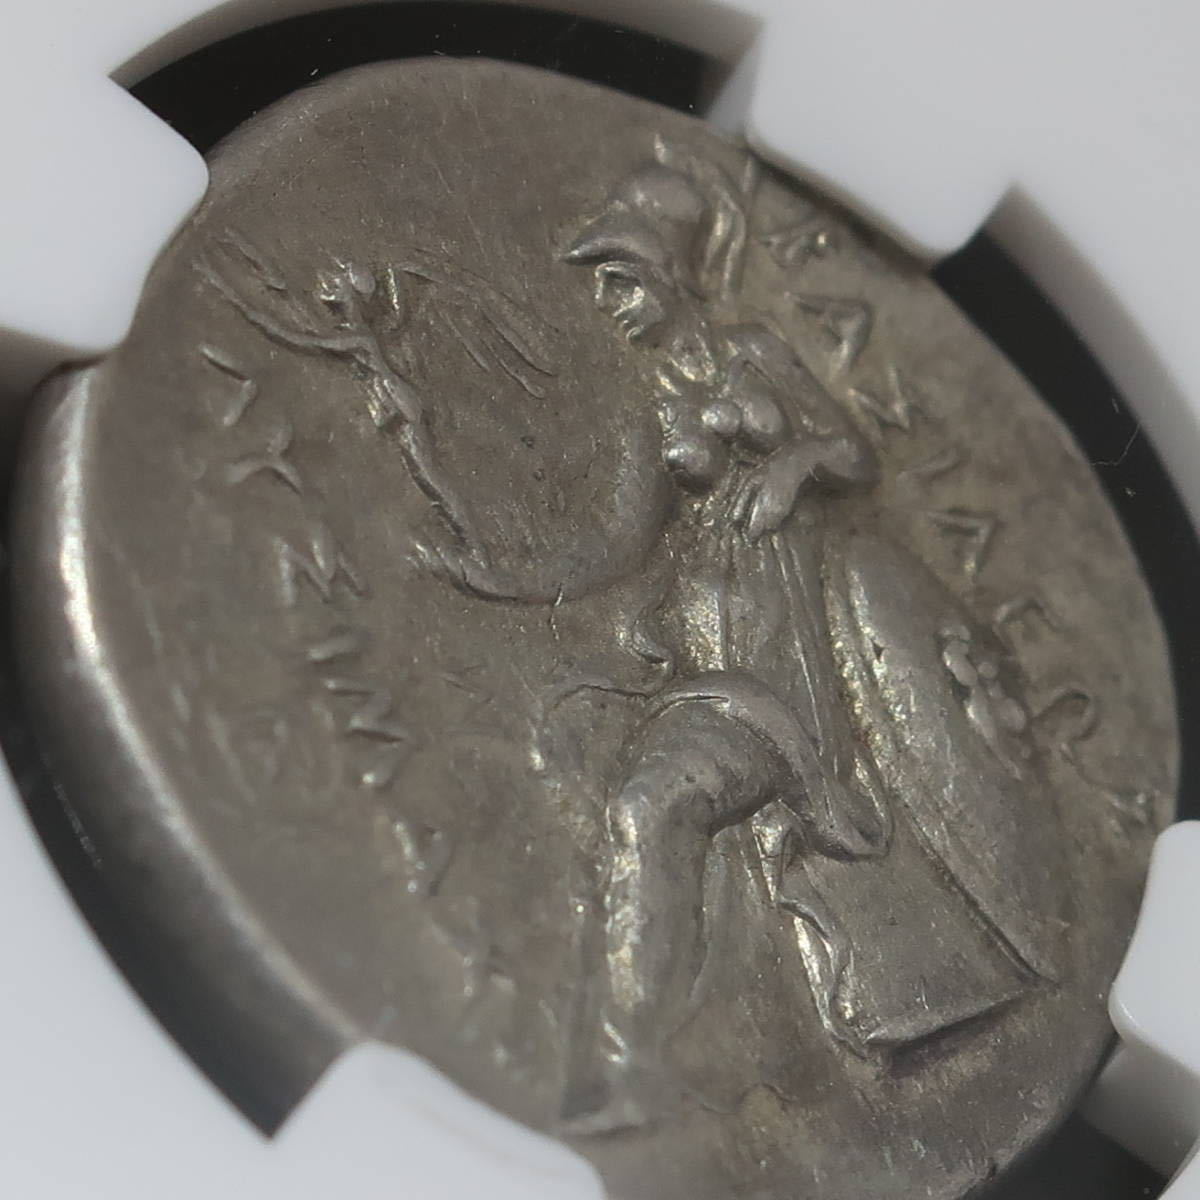 古代コイン アレキサンダー大王 リシマコス王 305-281BC テトラ 